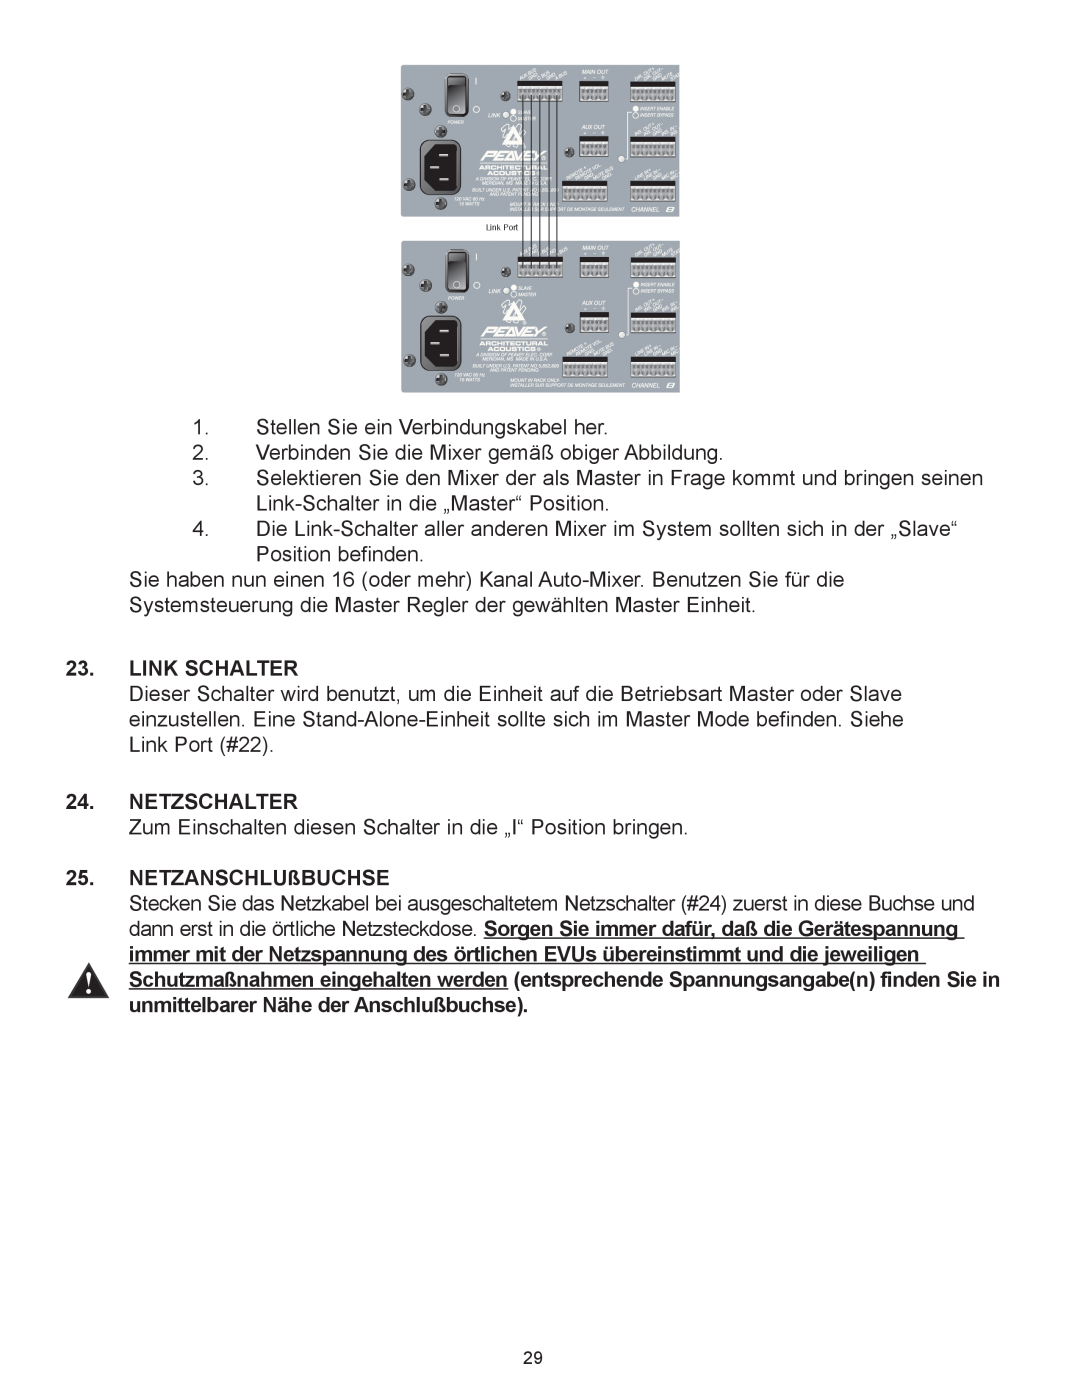 Peavey Automix2 manual Link Schalter, Netzschalter, Netzanschlu§Buchse 